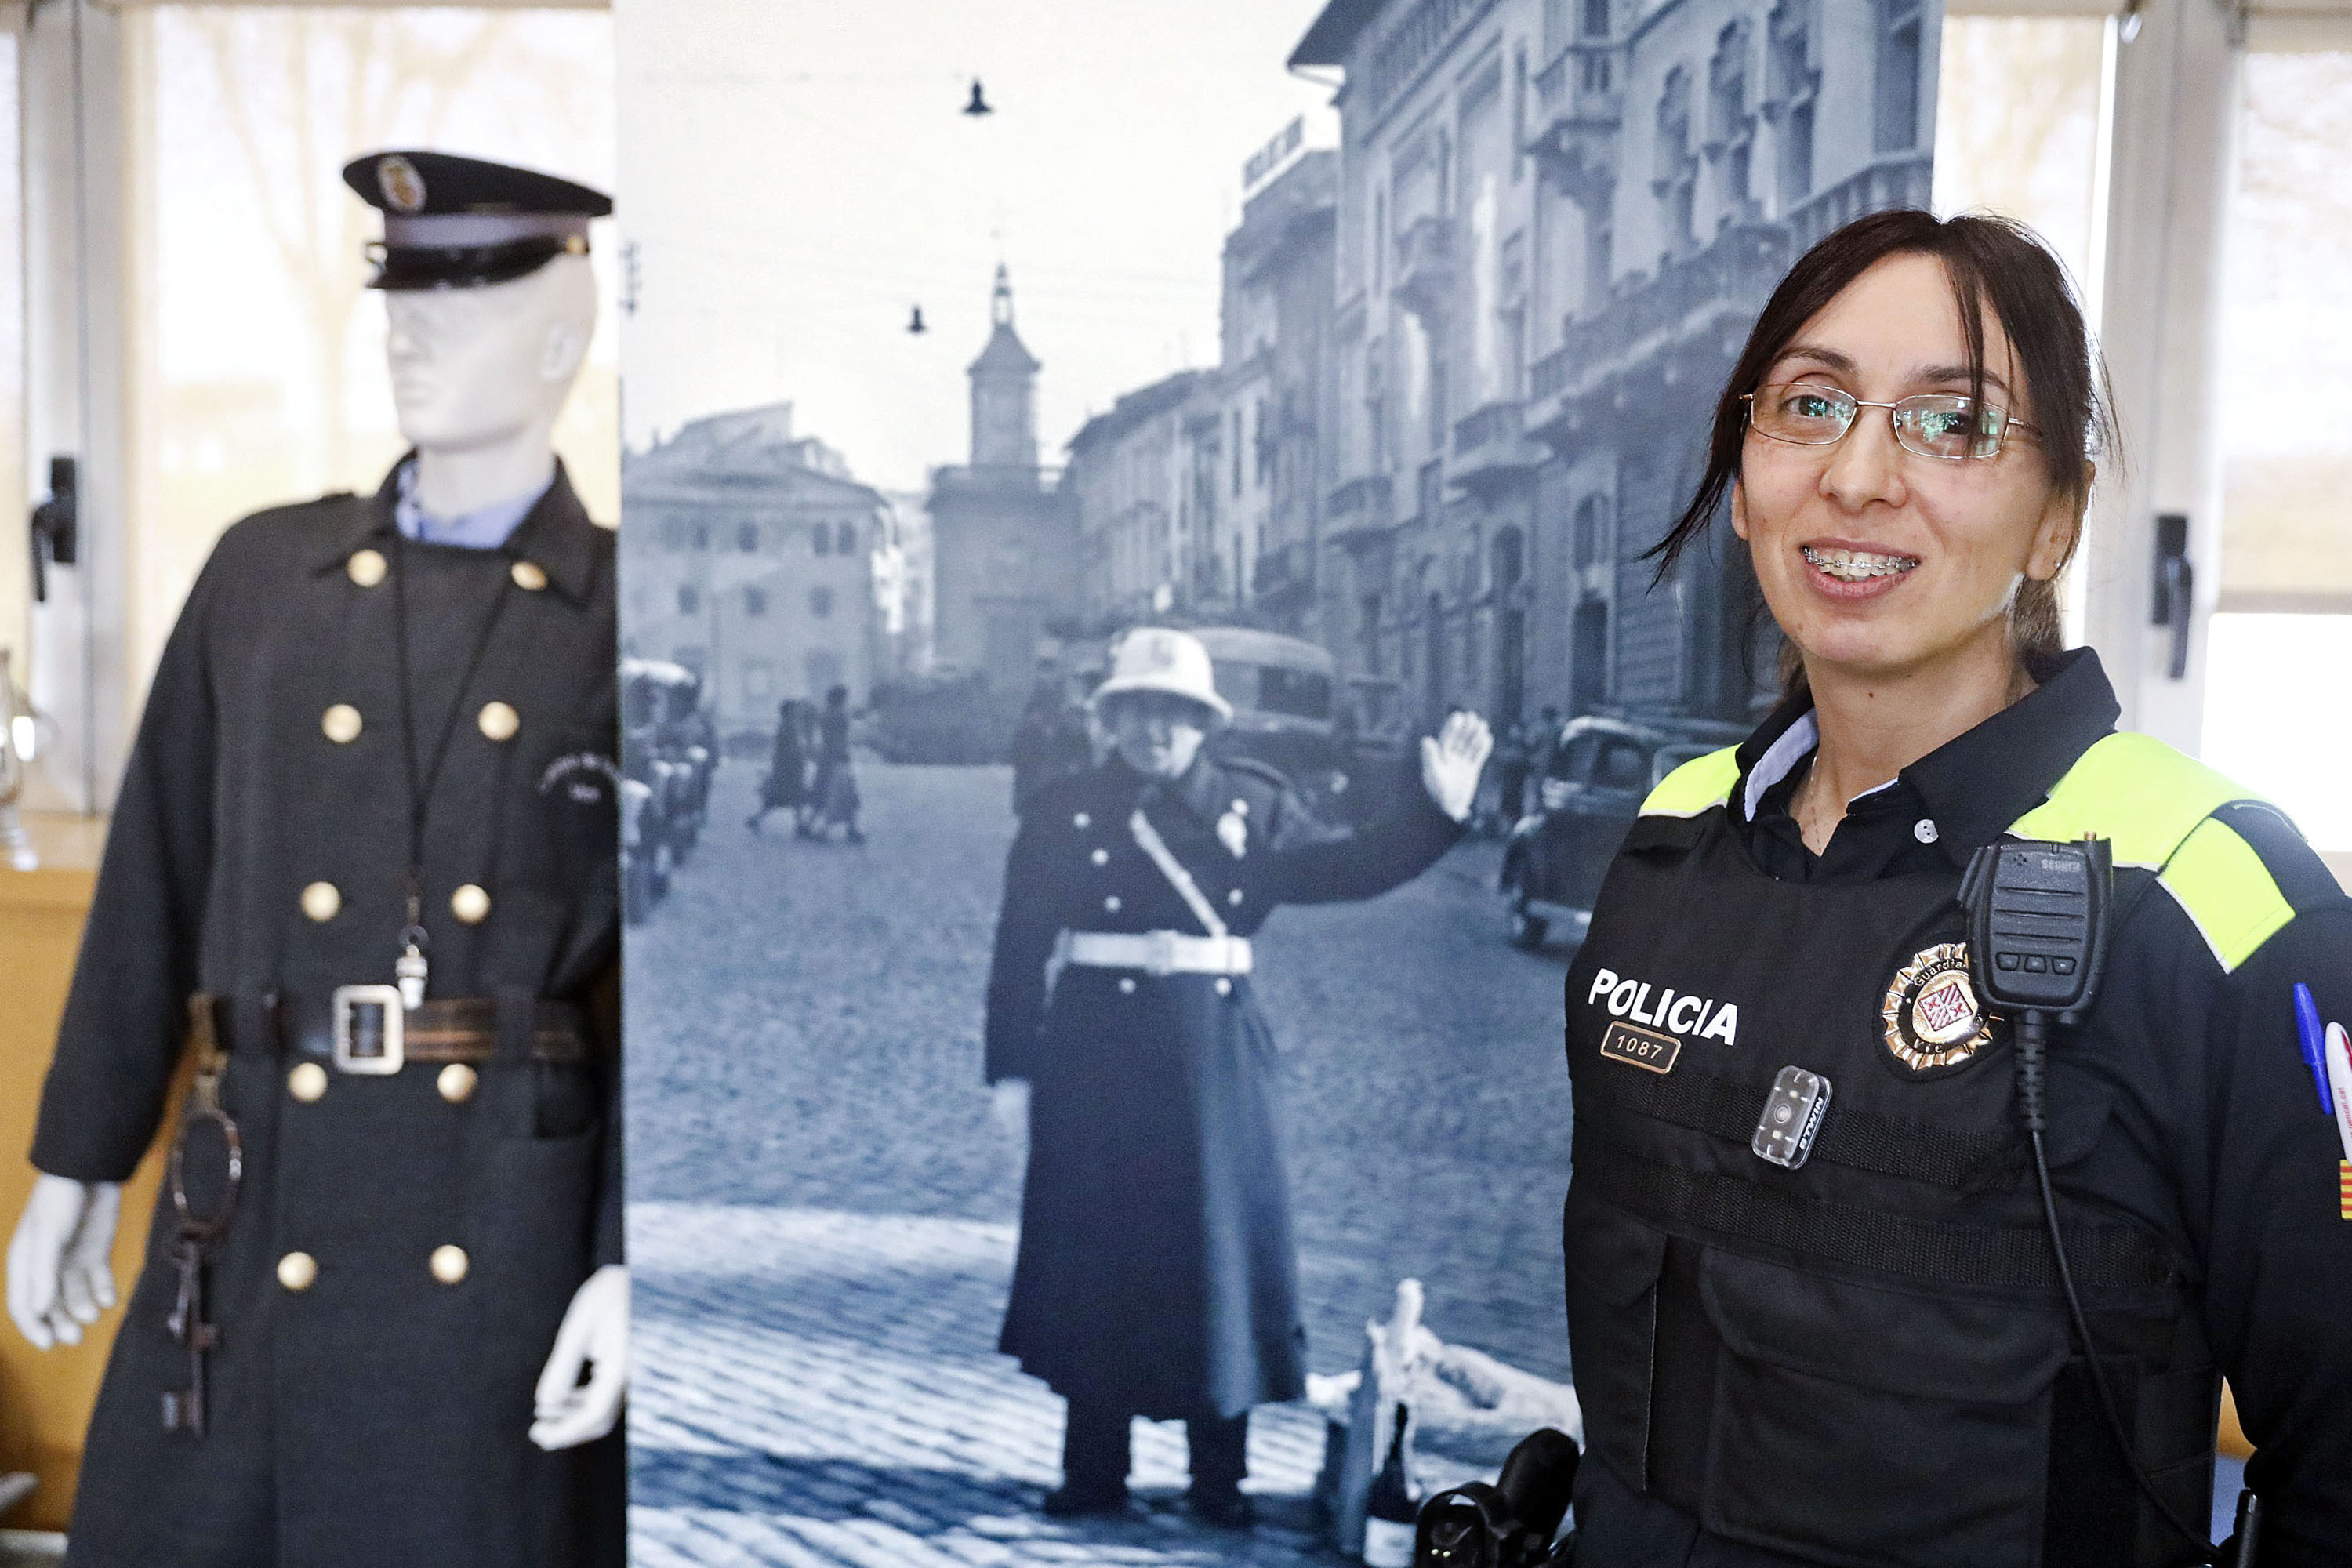 Anna Pou, agent de la Guàrdia Urbana de Vic, davant una imatge del passat i l’antic uniforme del cos de seguretat